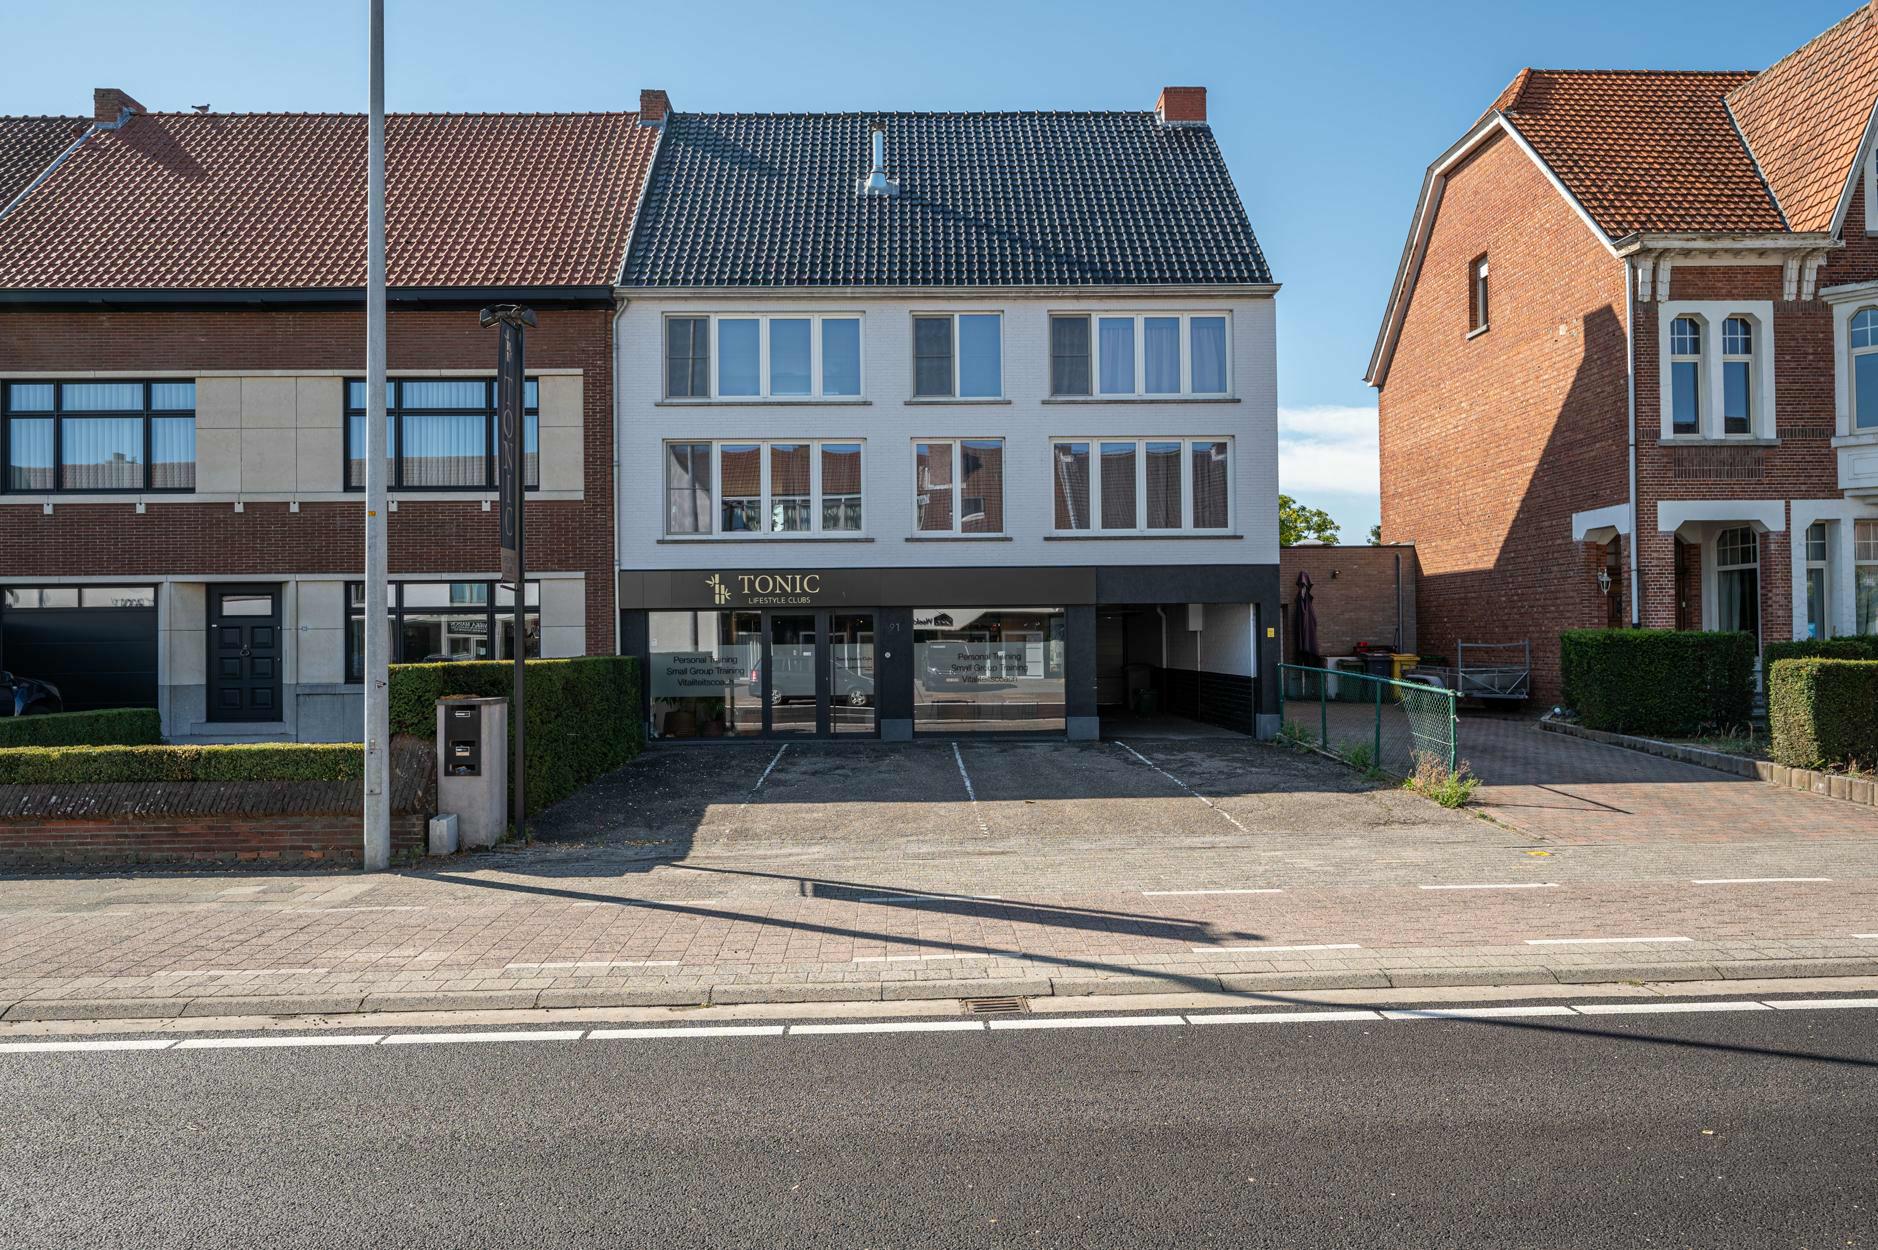 Handelsruimte/servicekantoor te Oud-Turnhout ca 200m²